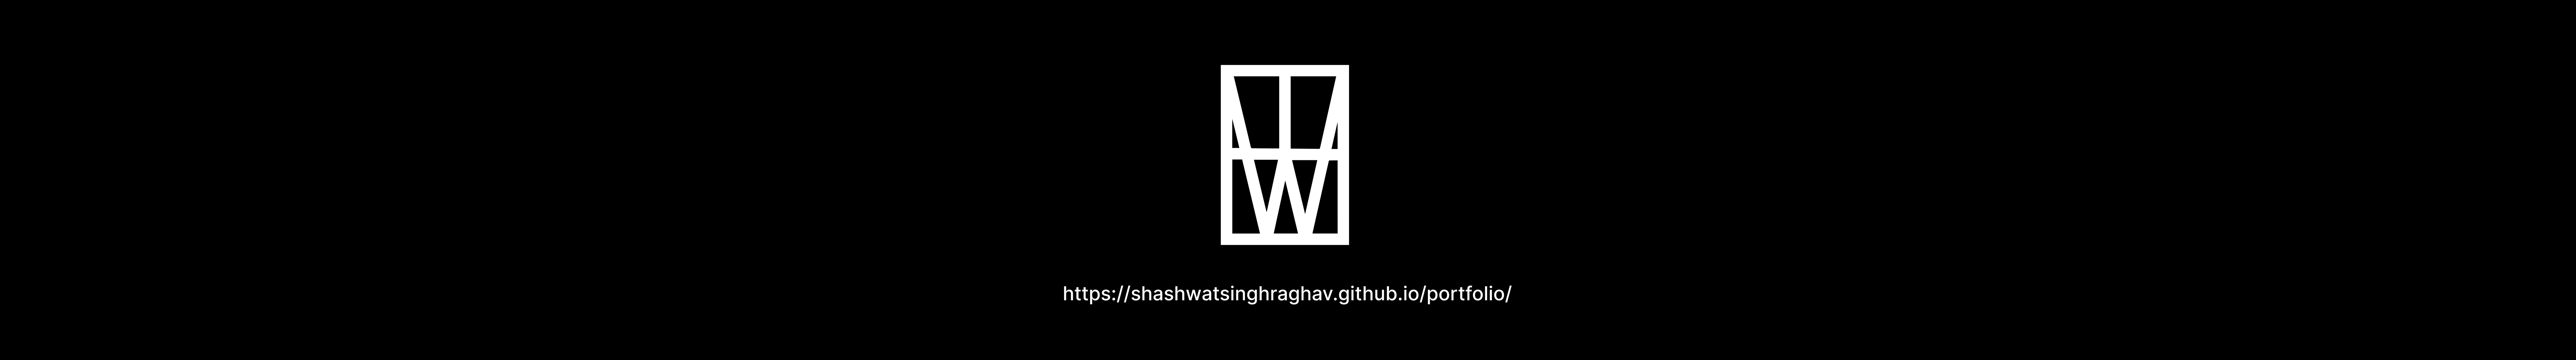 Shashwat Singh Raghav 的個人檔案橫幅